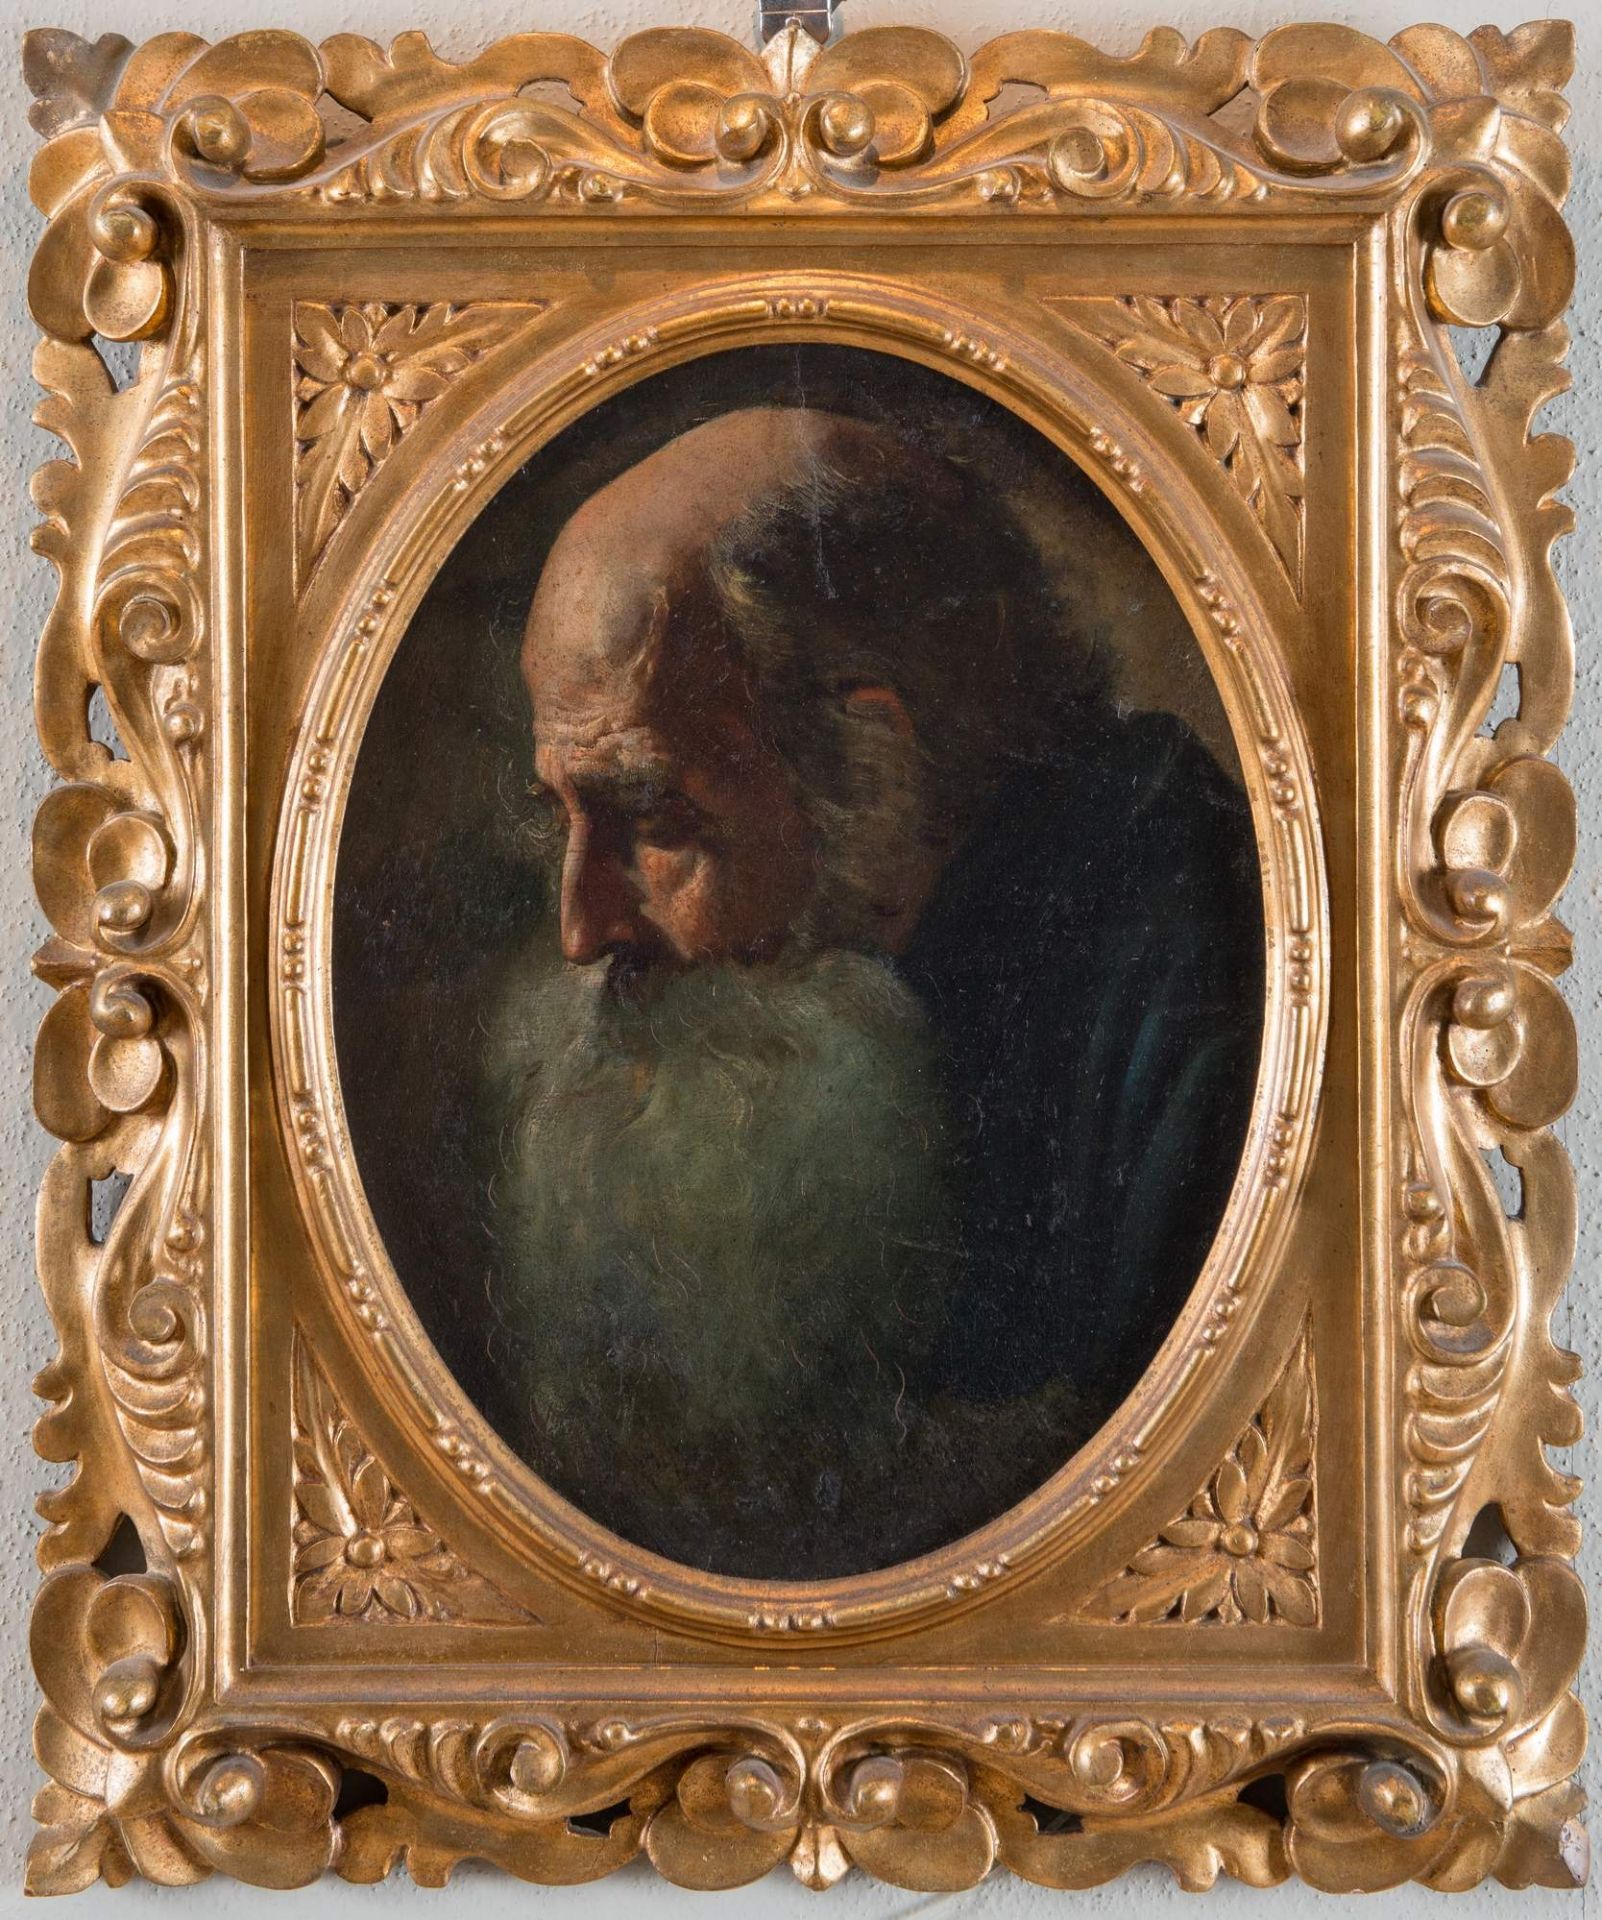 Maestro del XIX secolo. “Ritratto di anziano”. Olio su tavola ovale. Cm 34x26.